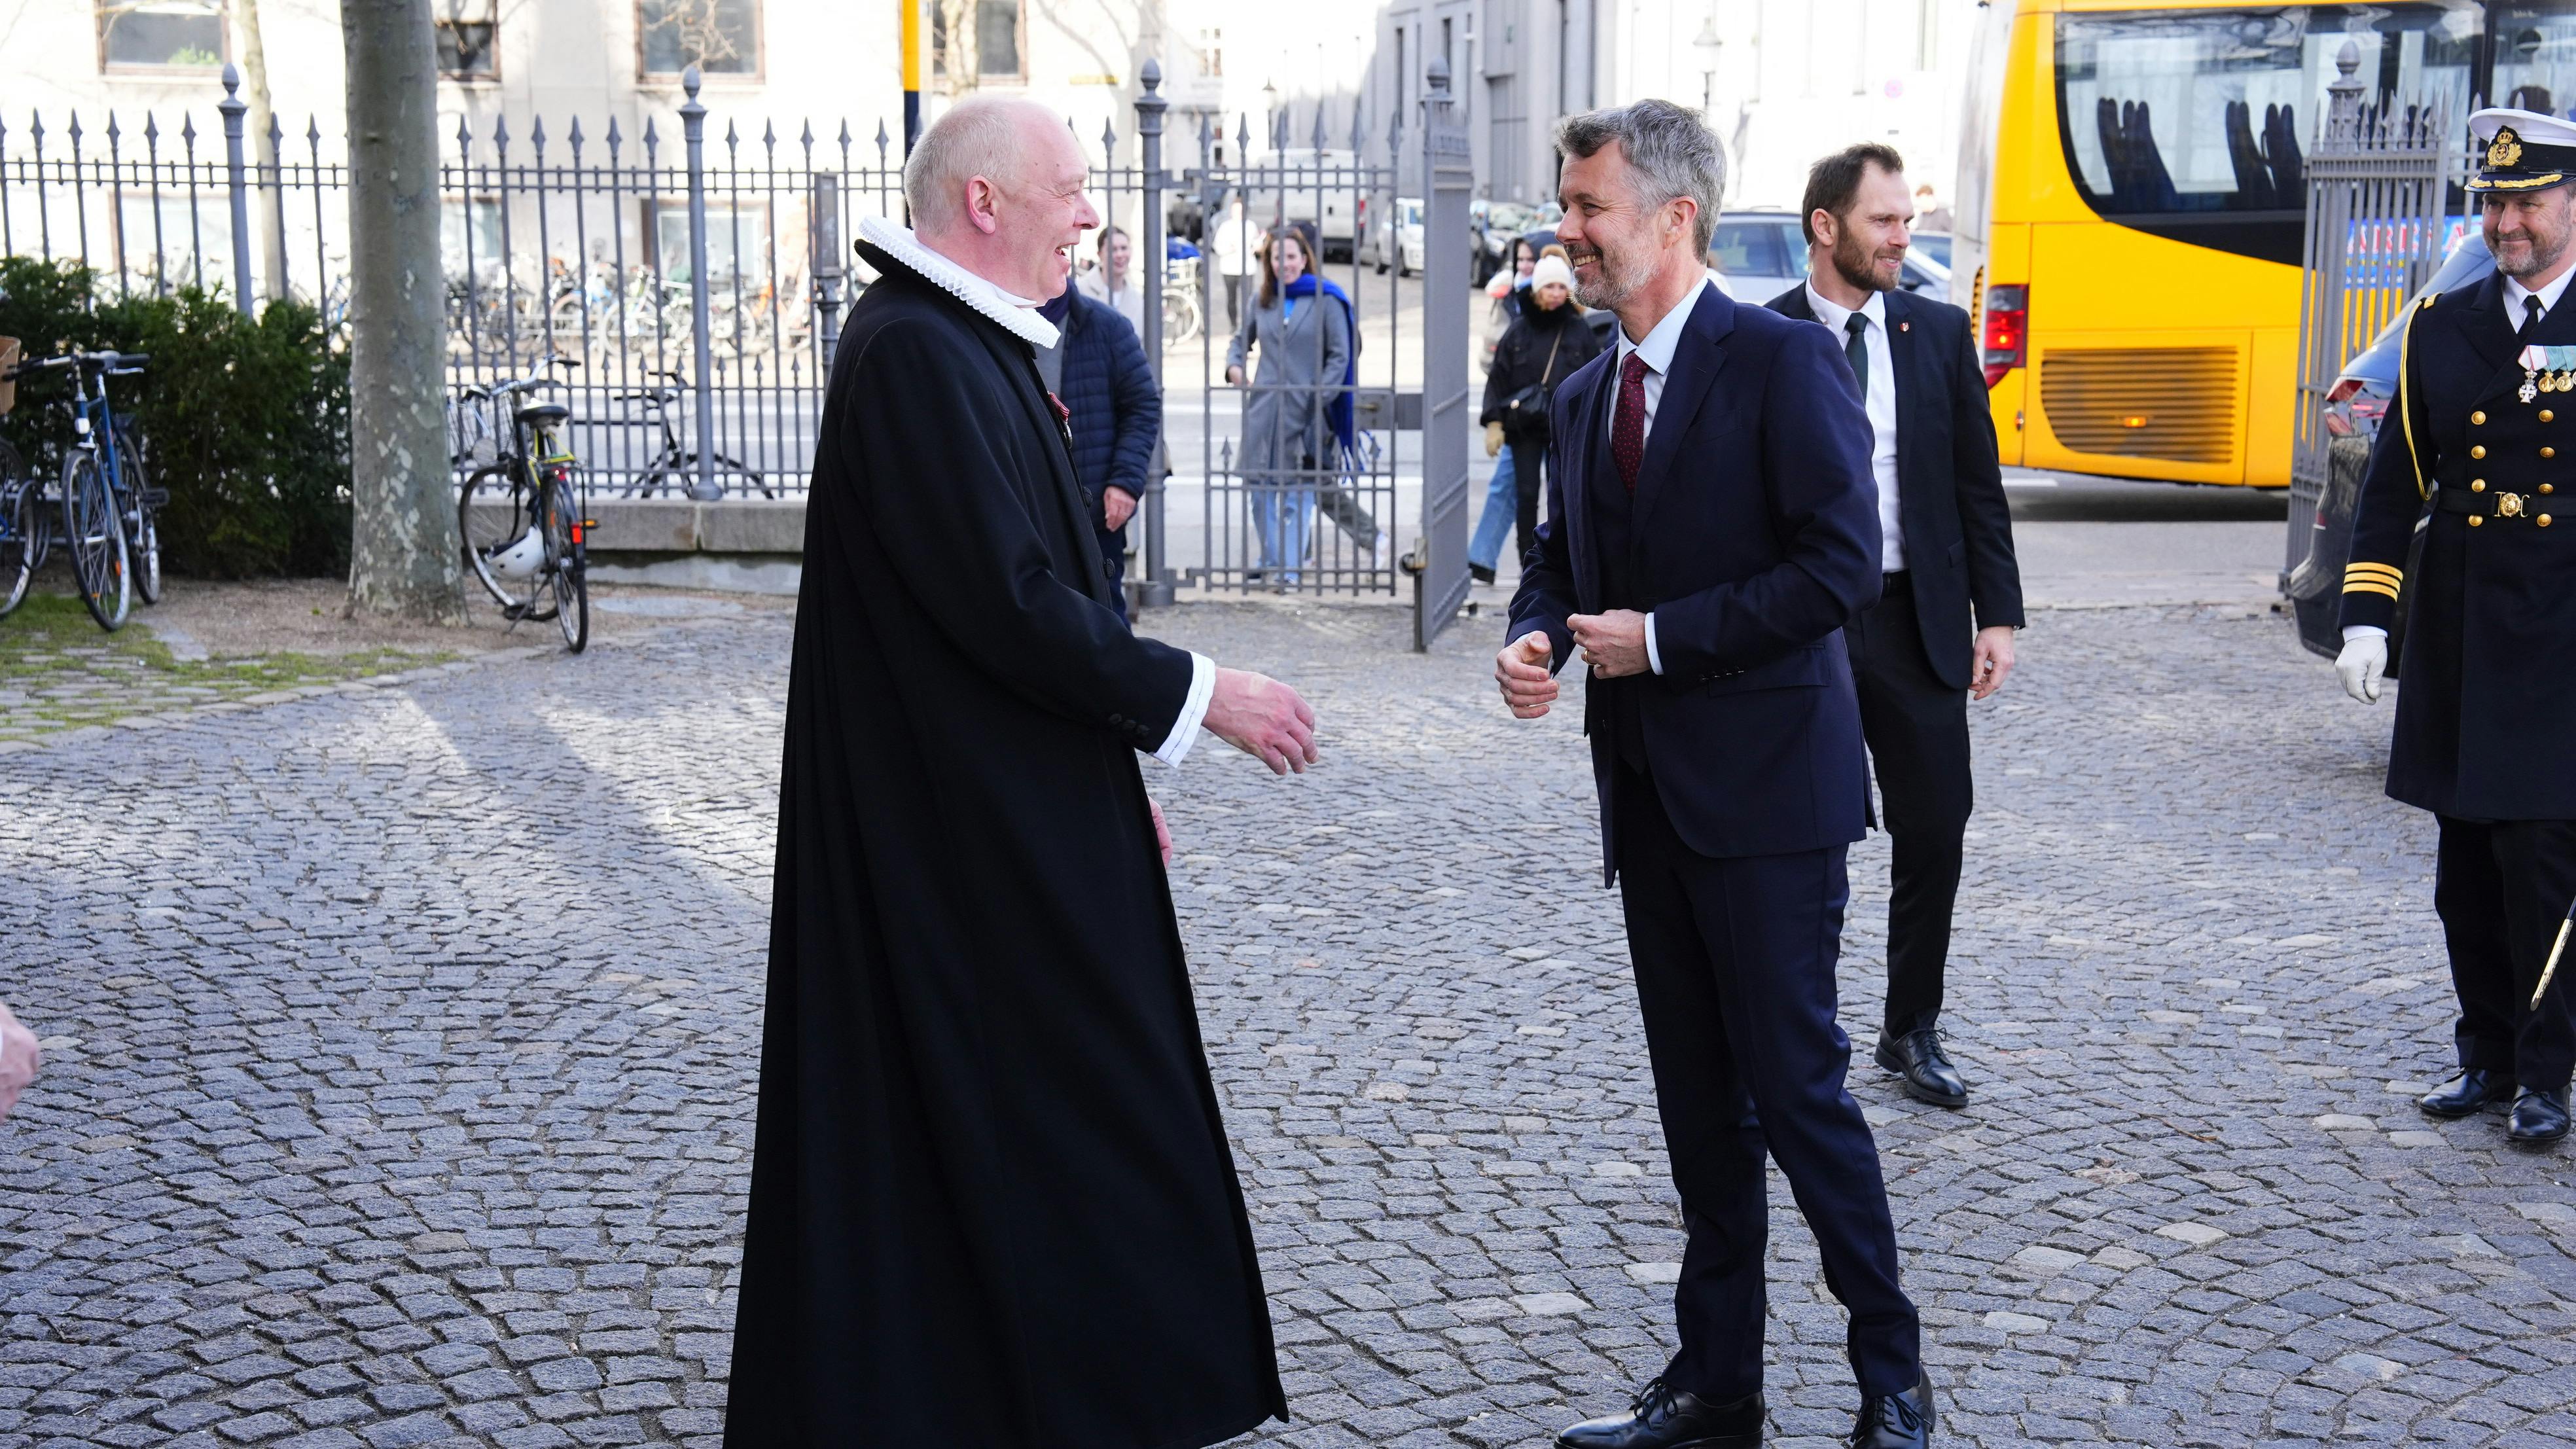 Kong Frederik er netop ankommet til Holmens Kirke, hvor der i anledning af toårsdagen for invasionen i Ukraine afholdes fredsgudstjeneste i Holmens Kirke i København.